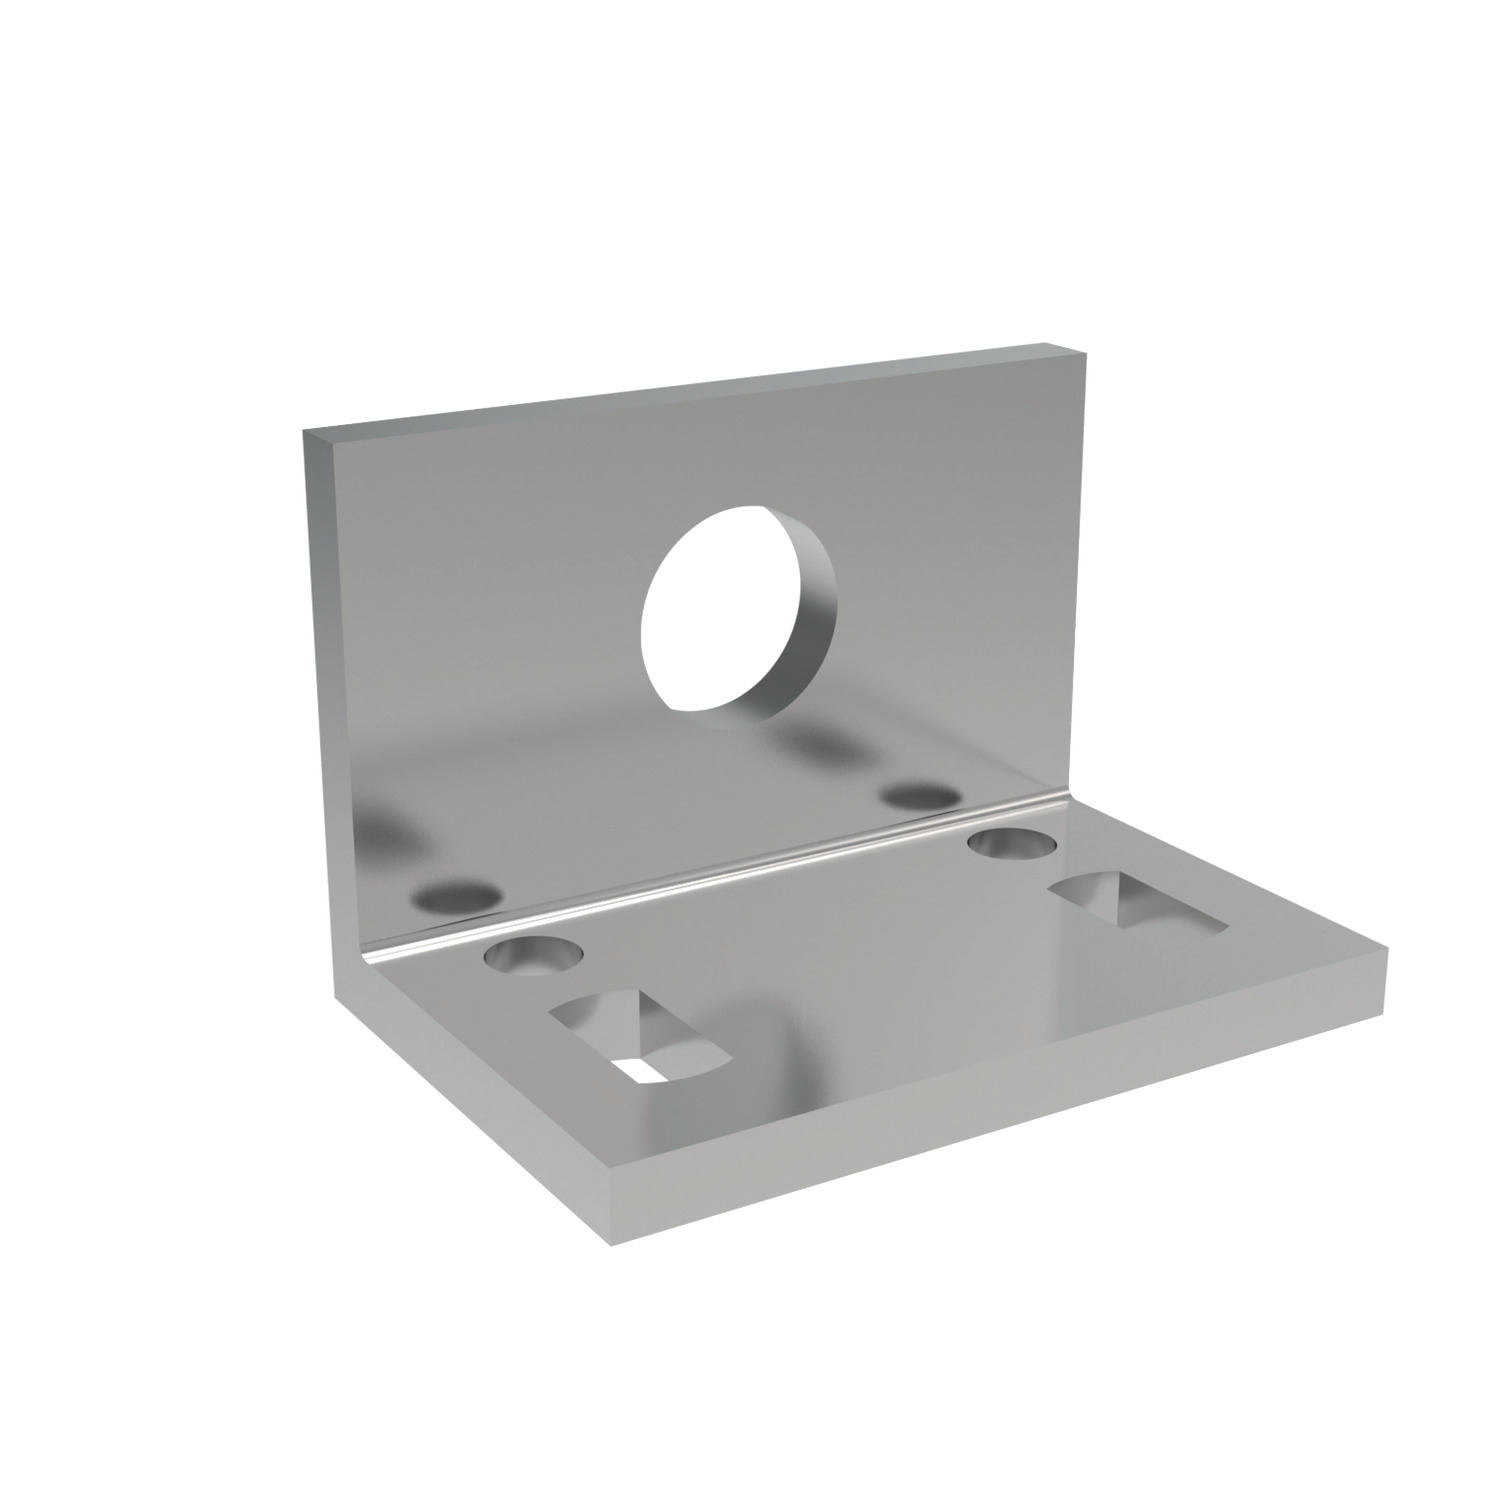 41880.W0500 Angle Plates - Zinc Plated 0 - 30 - 9,0 - 16